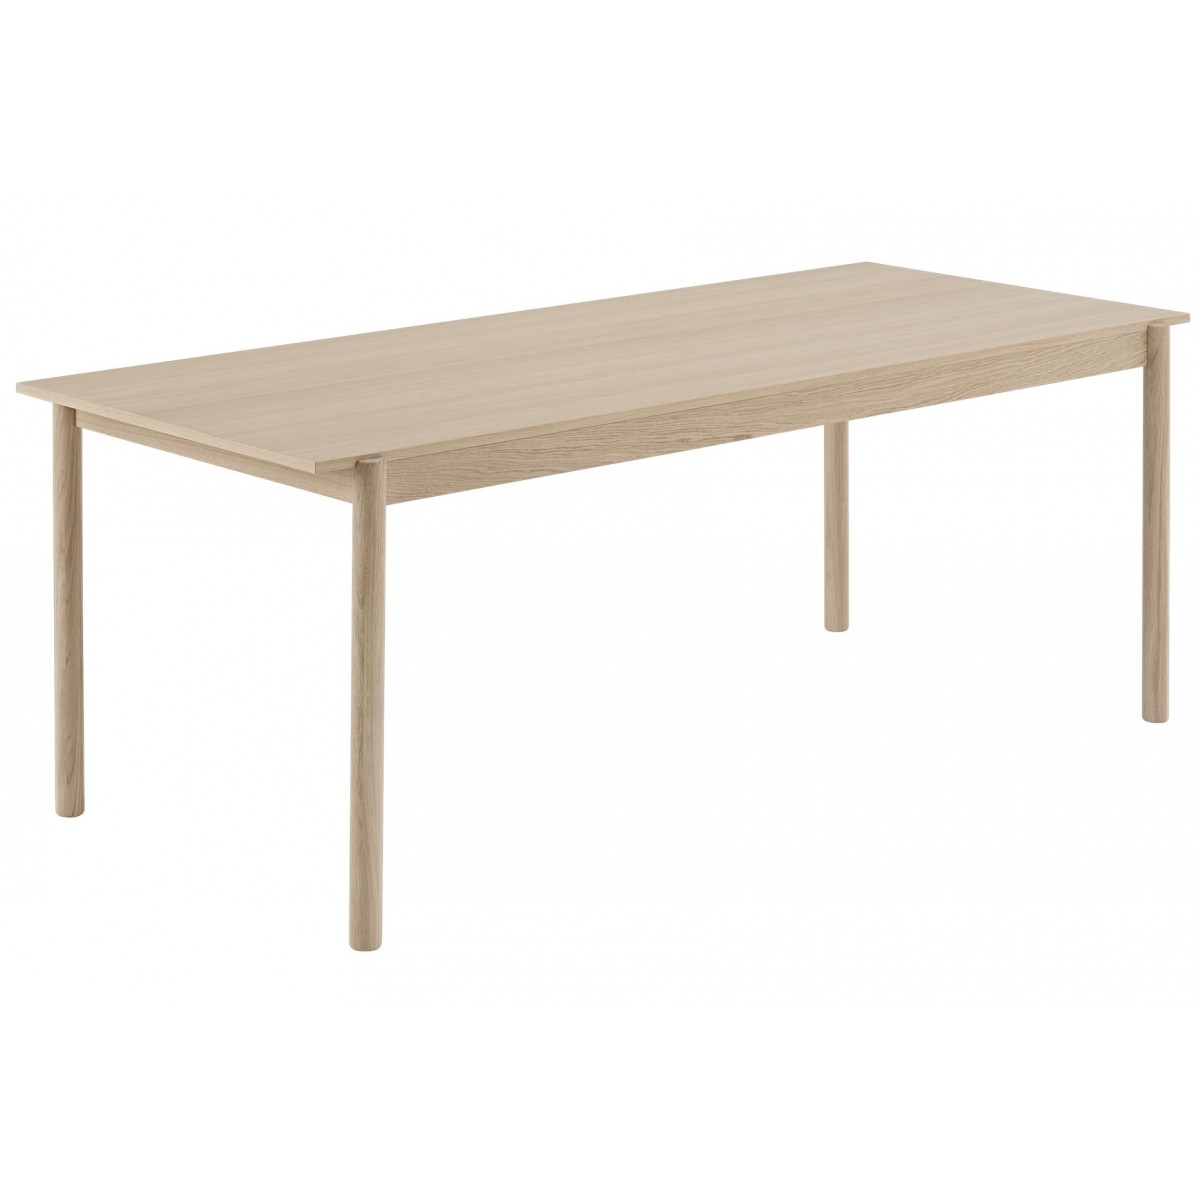 200 x 90cm oak - Linear dining table